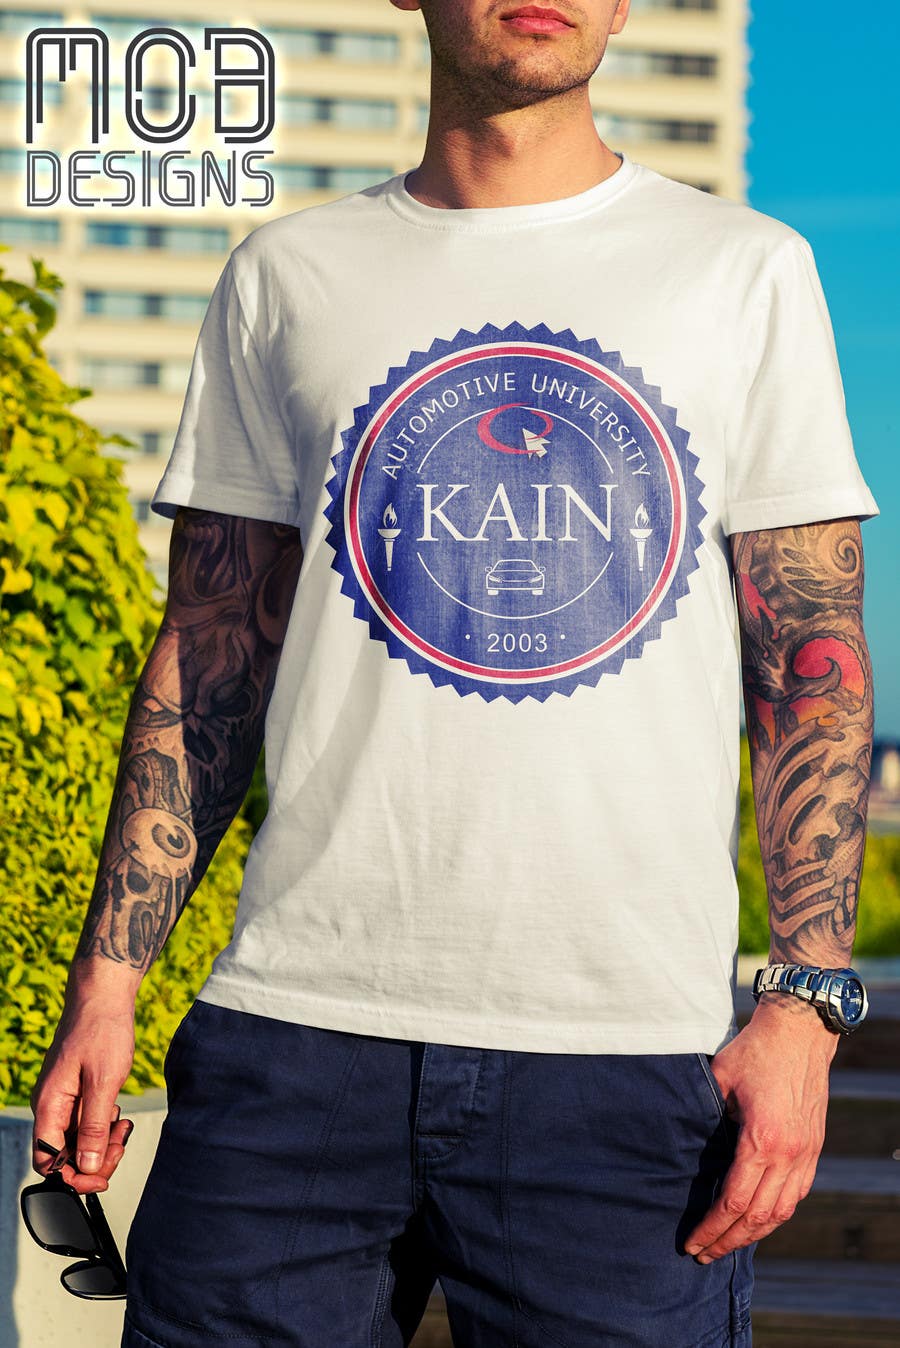 Zgłoszenie konkursowe o numerze #33 do konkursu o nazwie                                                 Design for a t-shirt for Kain University using our current logo in a distressed look
                                            